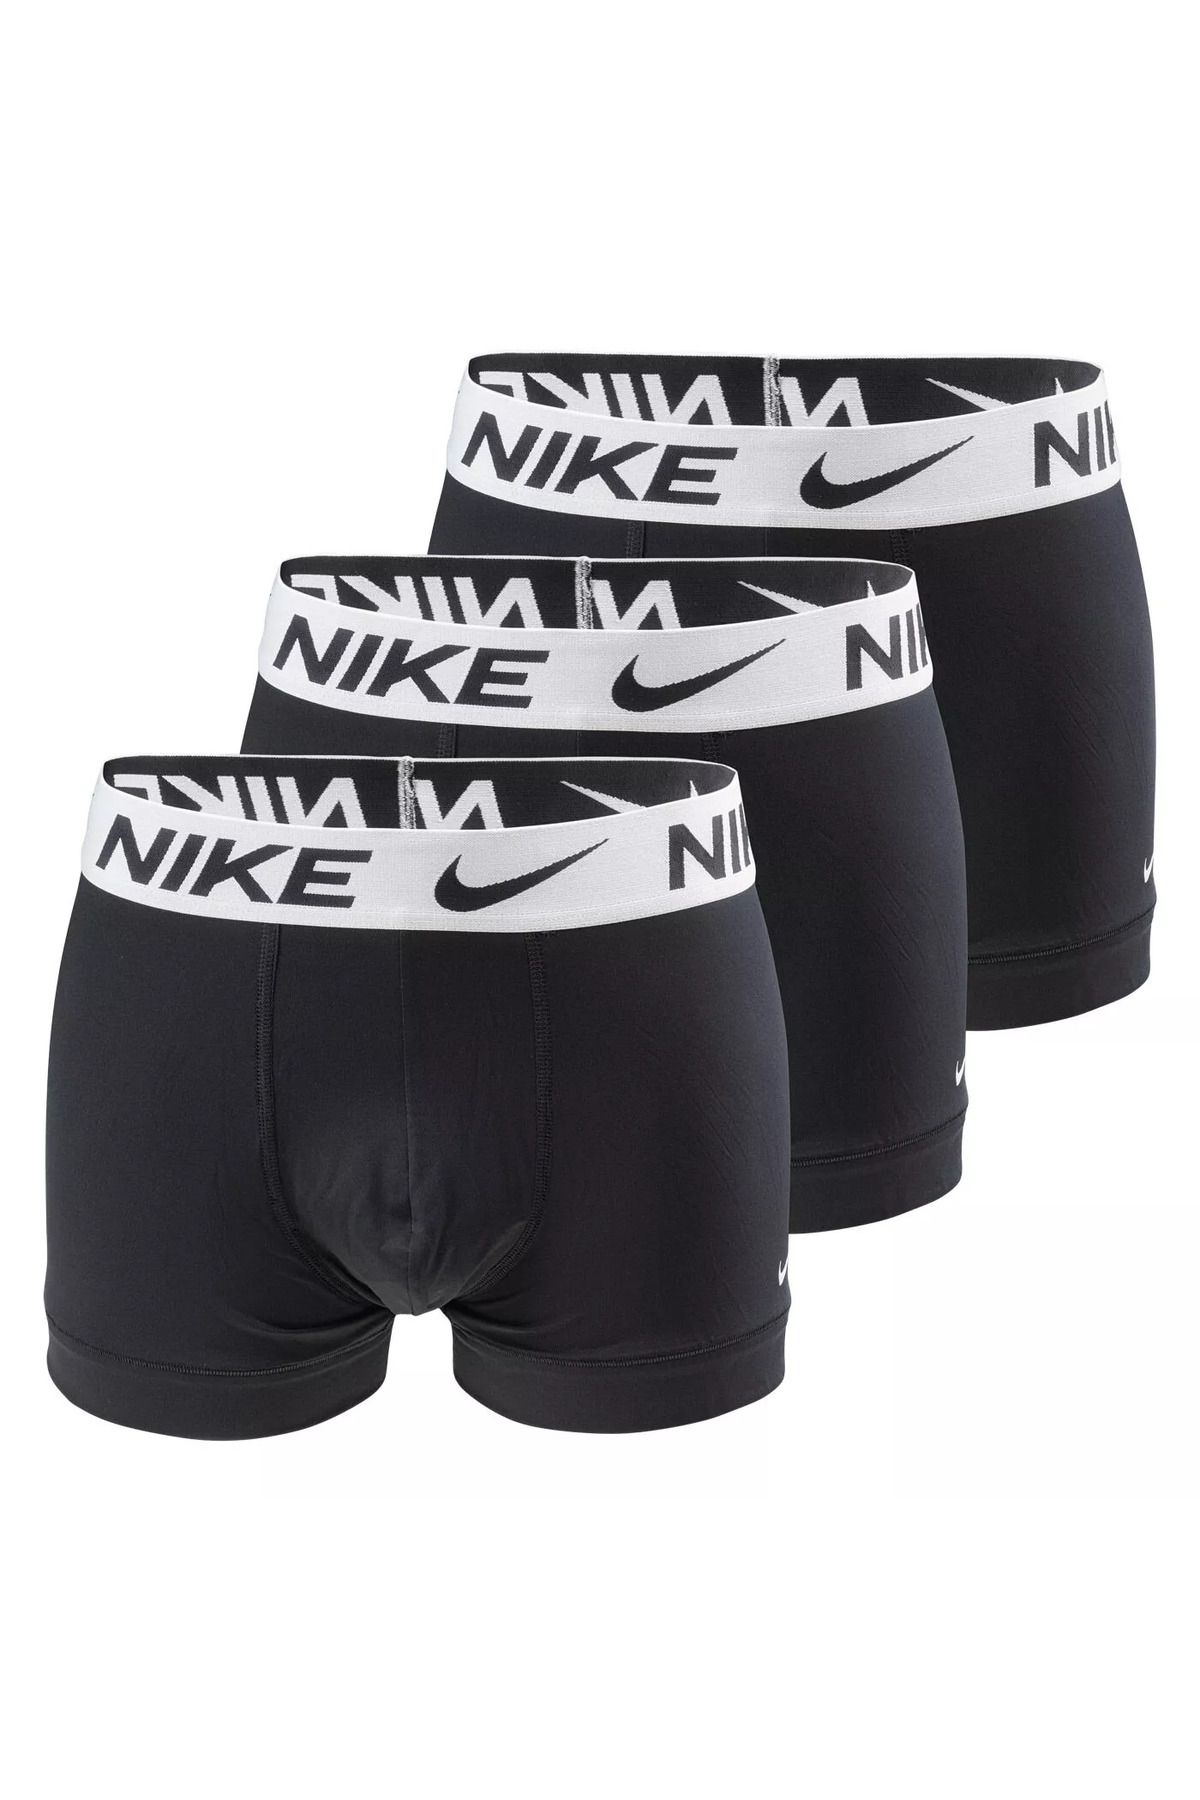 Nike Erkek Marka Logolu Elastik Bantlı Günlük Kullanıma Uygun Siyah Boxer 0000ke1156-5i4